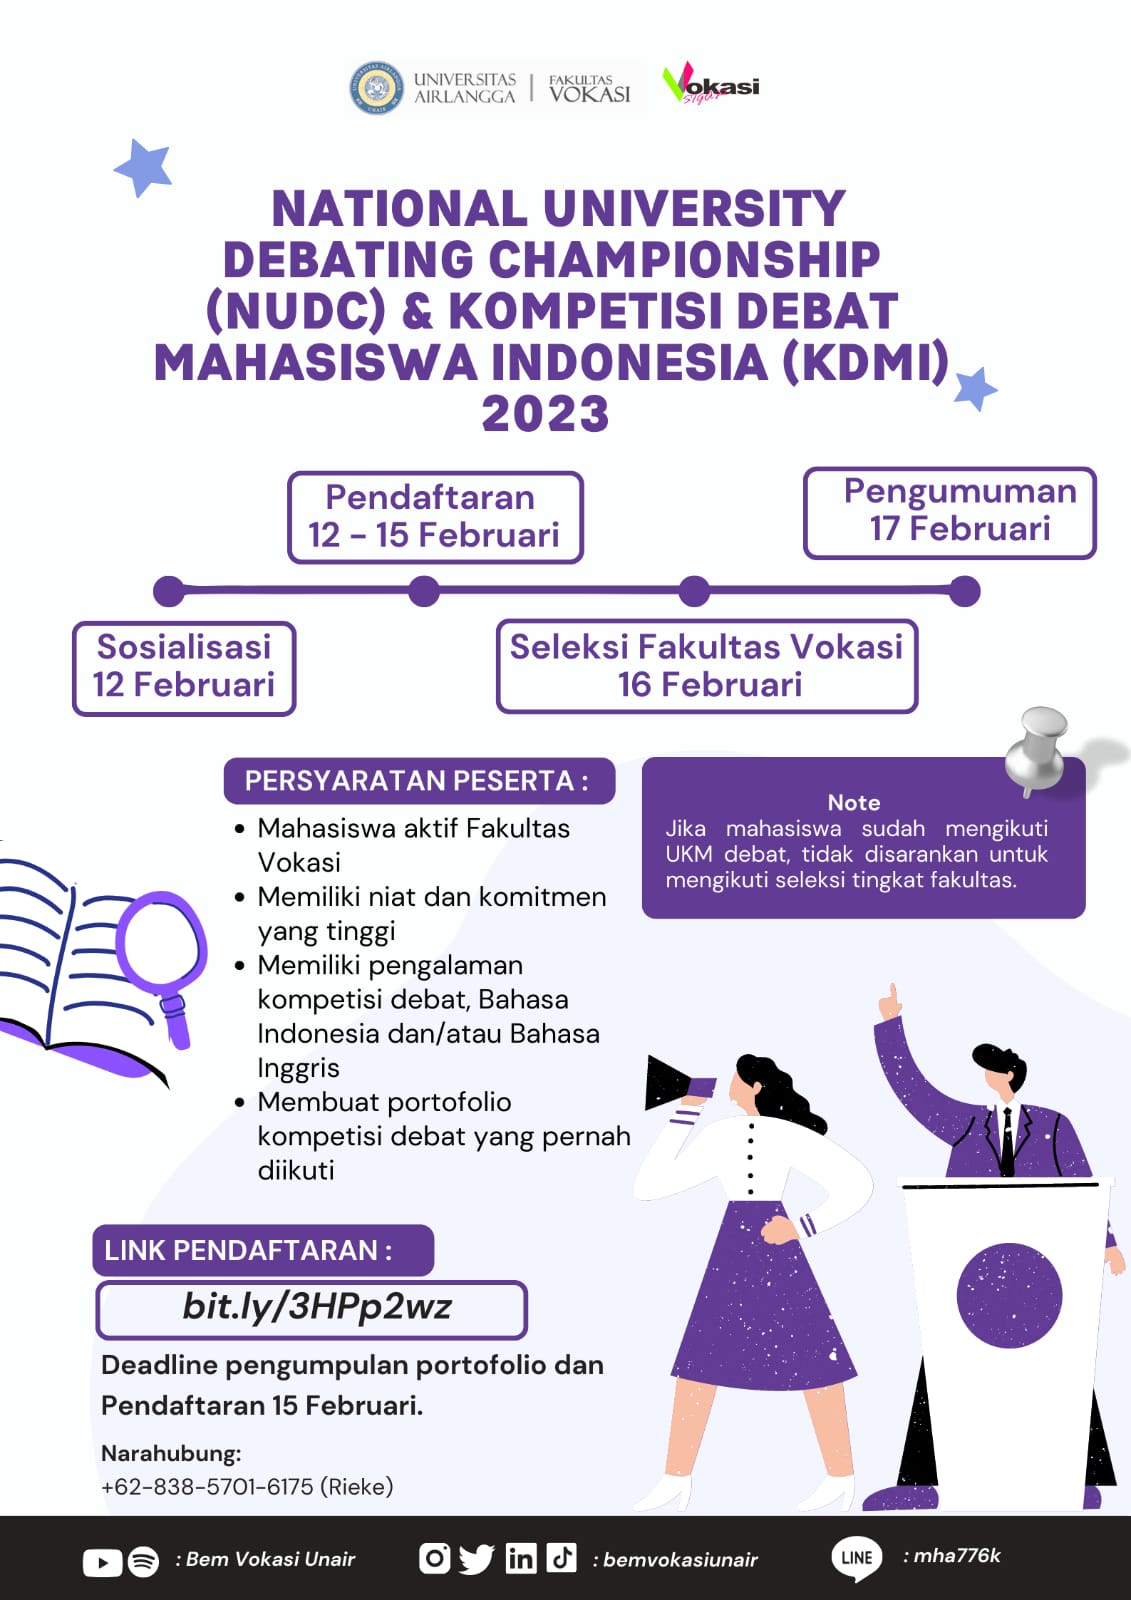 National University Debating Championship (NUDC) & Kompetensi Debat Mahasiswa Indonesia (KDMI) 2023